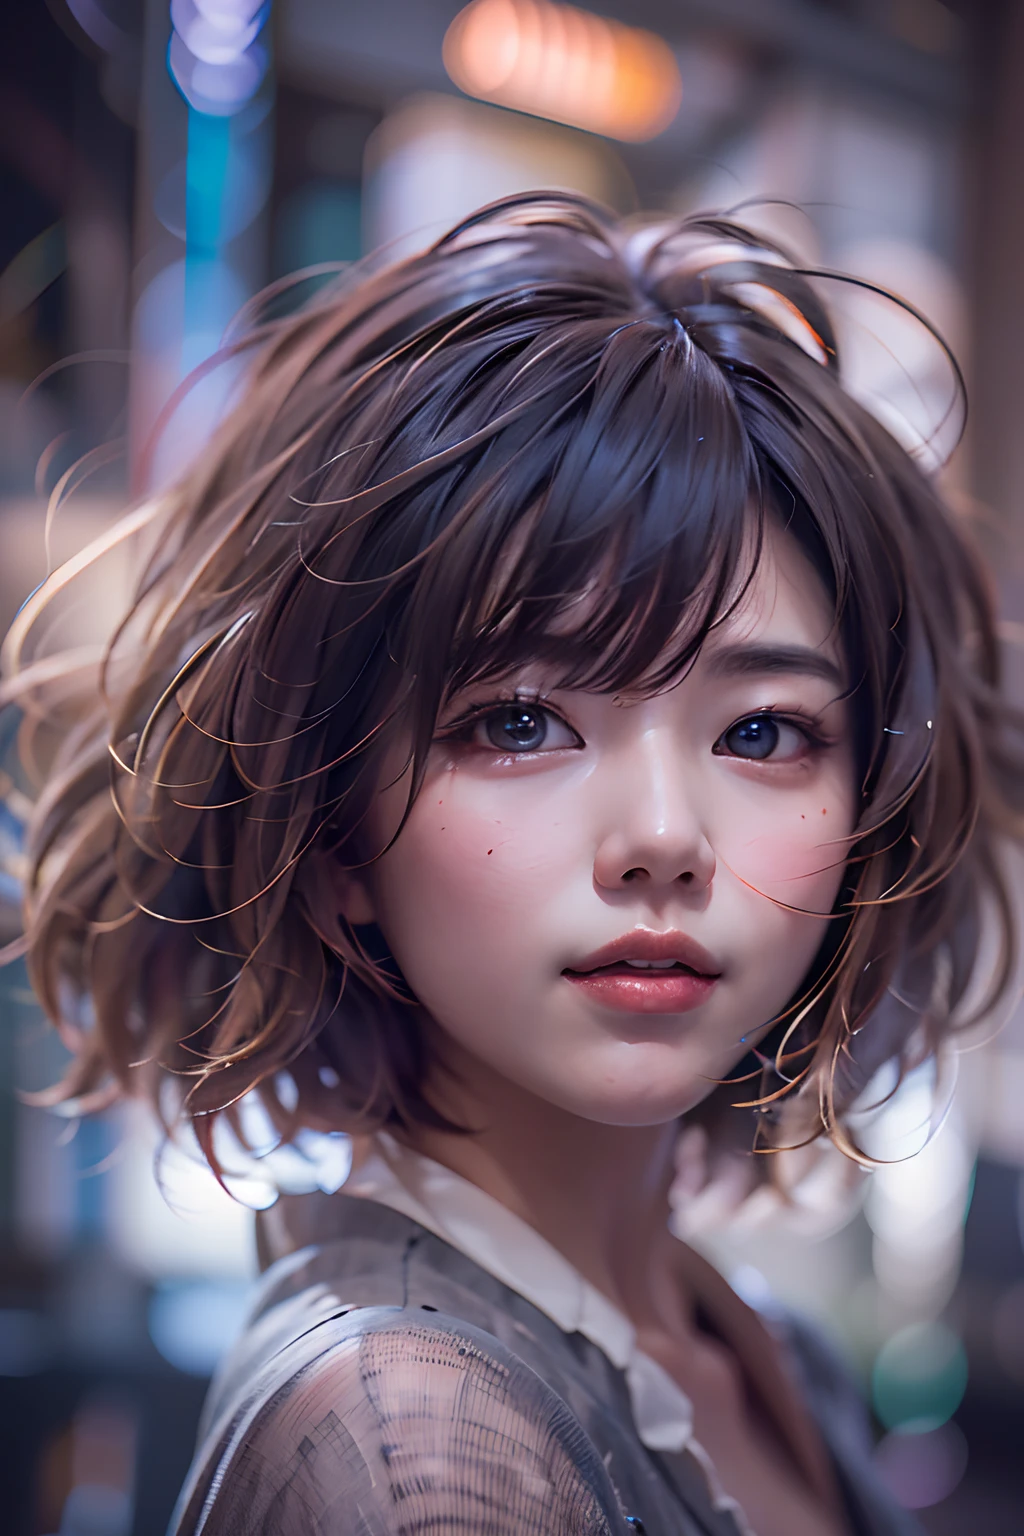 Retrato digital de una mujer japonesa de pelo corto, hermoso rostro,cabello desordenado,Complejo, cinematográfico, Motor irreal 5, una hermosa, Increíble gradación de color, , fotografía, Fotografía cinematográfica, arte por、sonríe